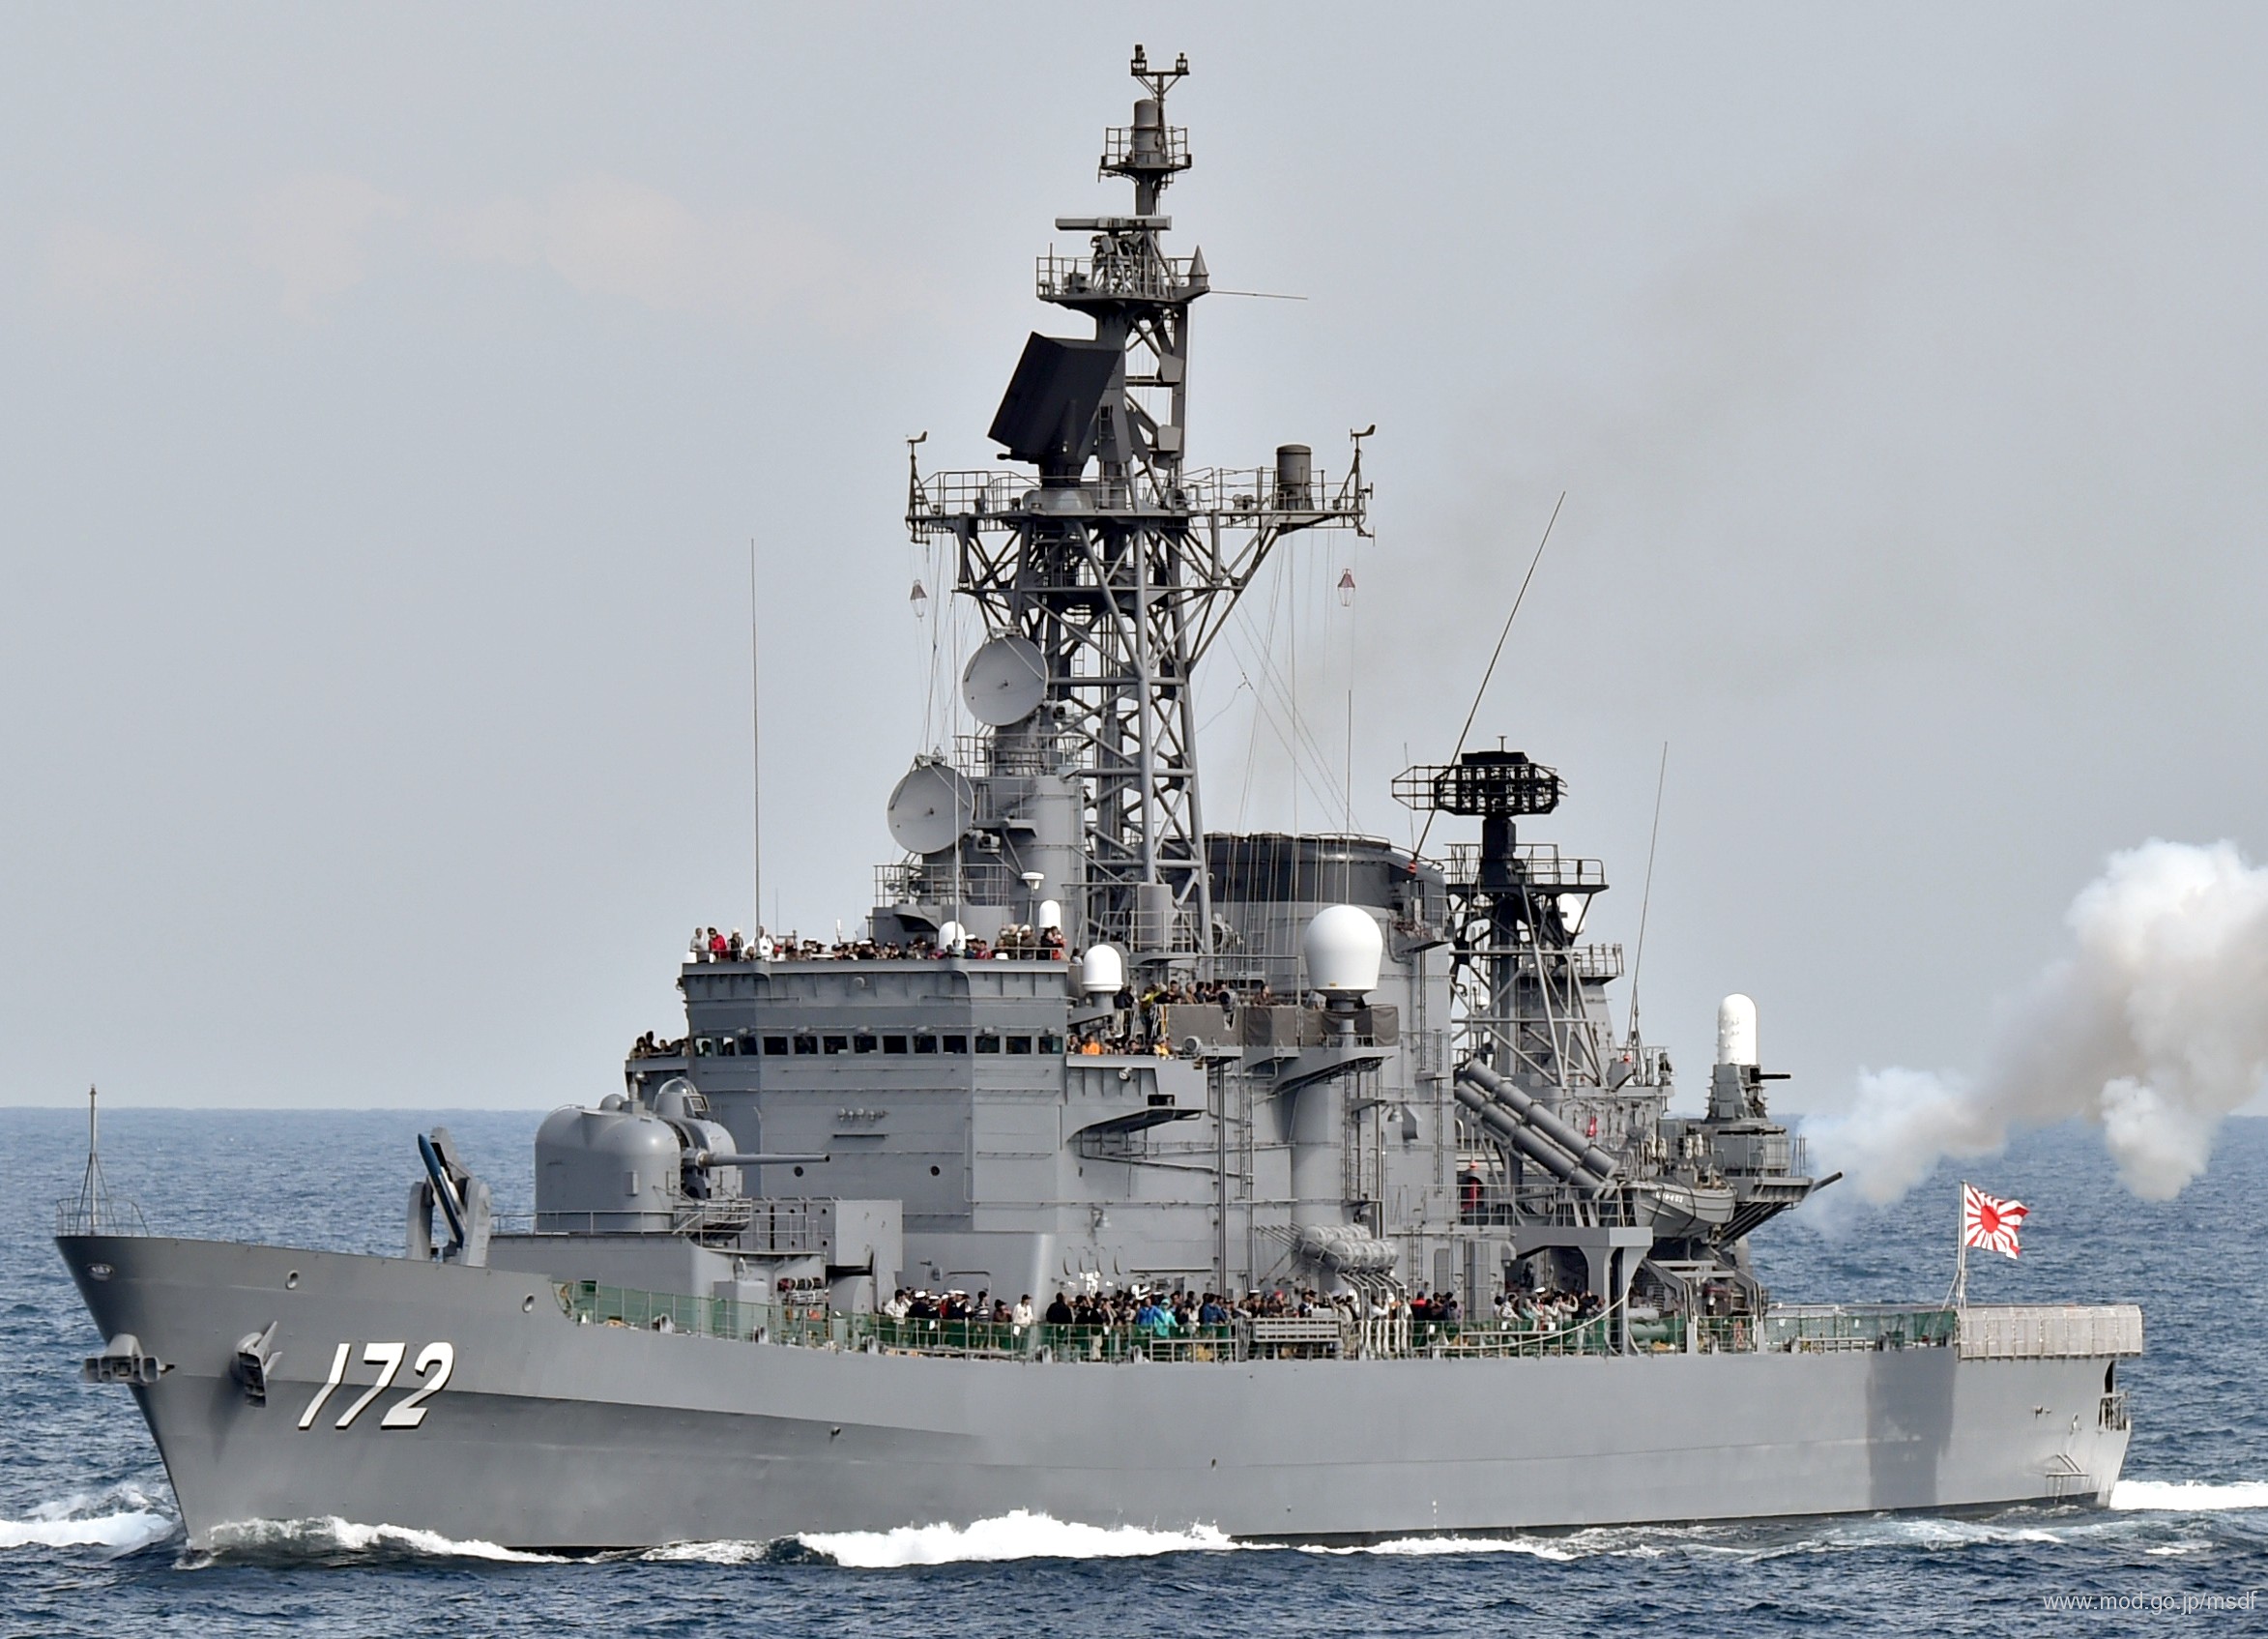 ddg-172 jds shimakaze hatakaze class guided missile destroyer japan maritime self defense force jmsdf 05